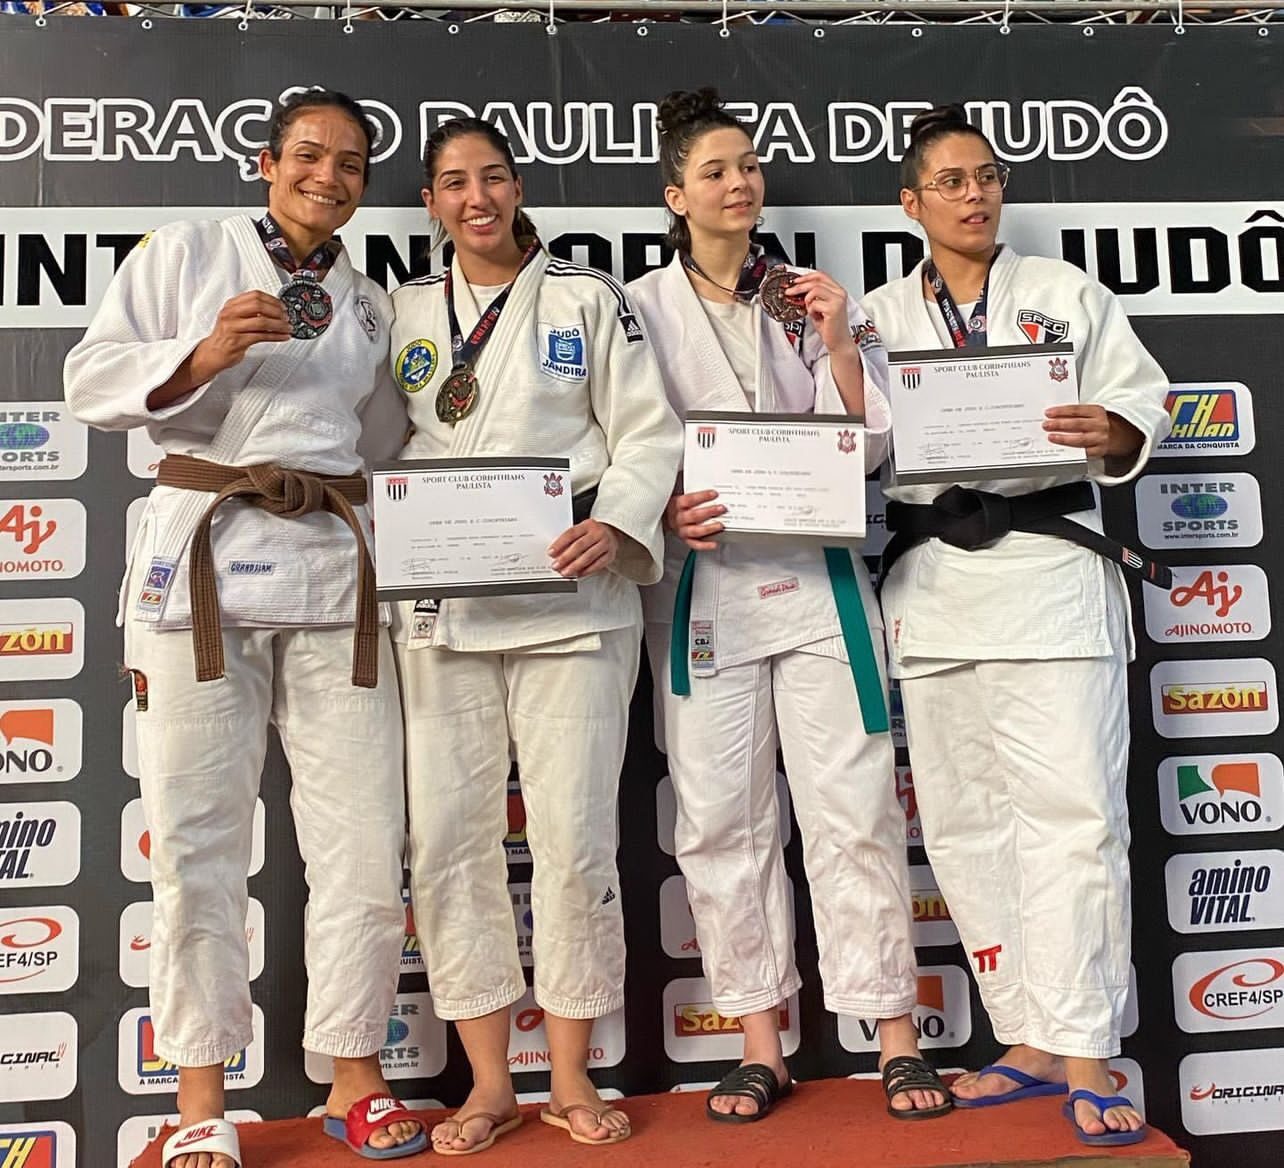 Judocas conquistam medalhas e classificações – Prefeitura de Artur Nogueira